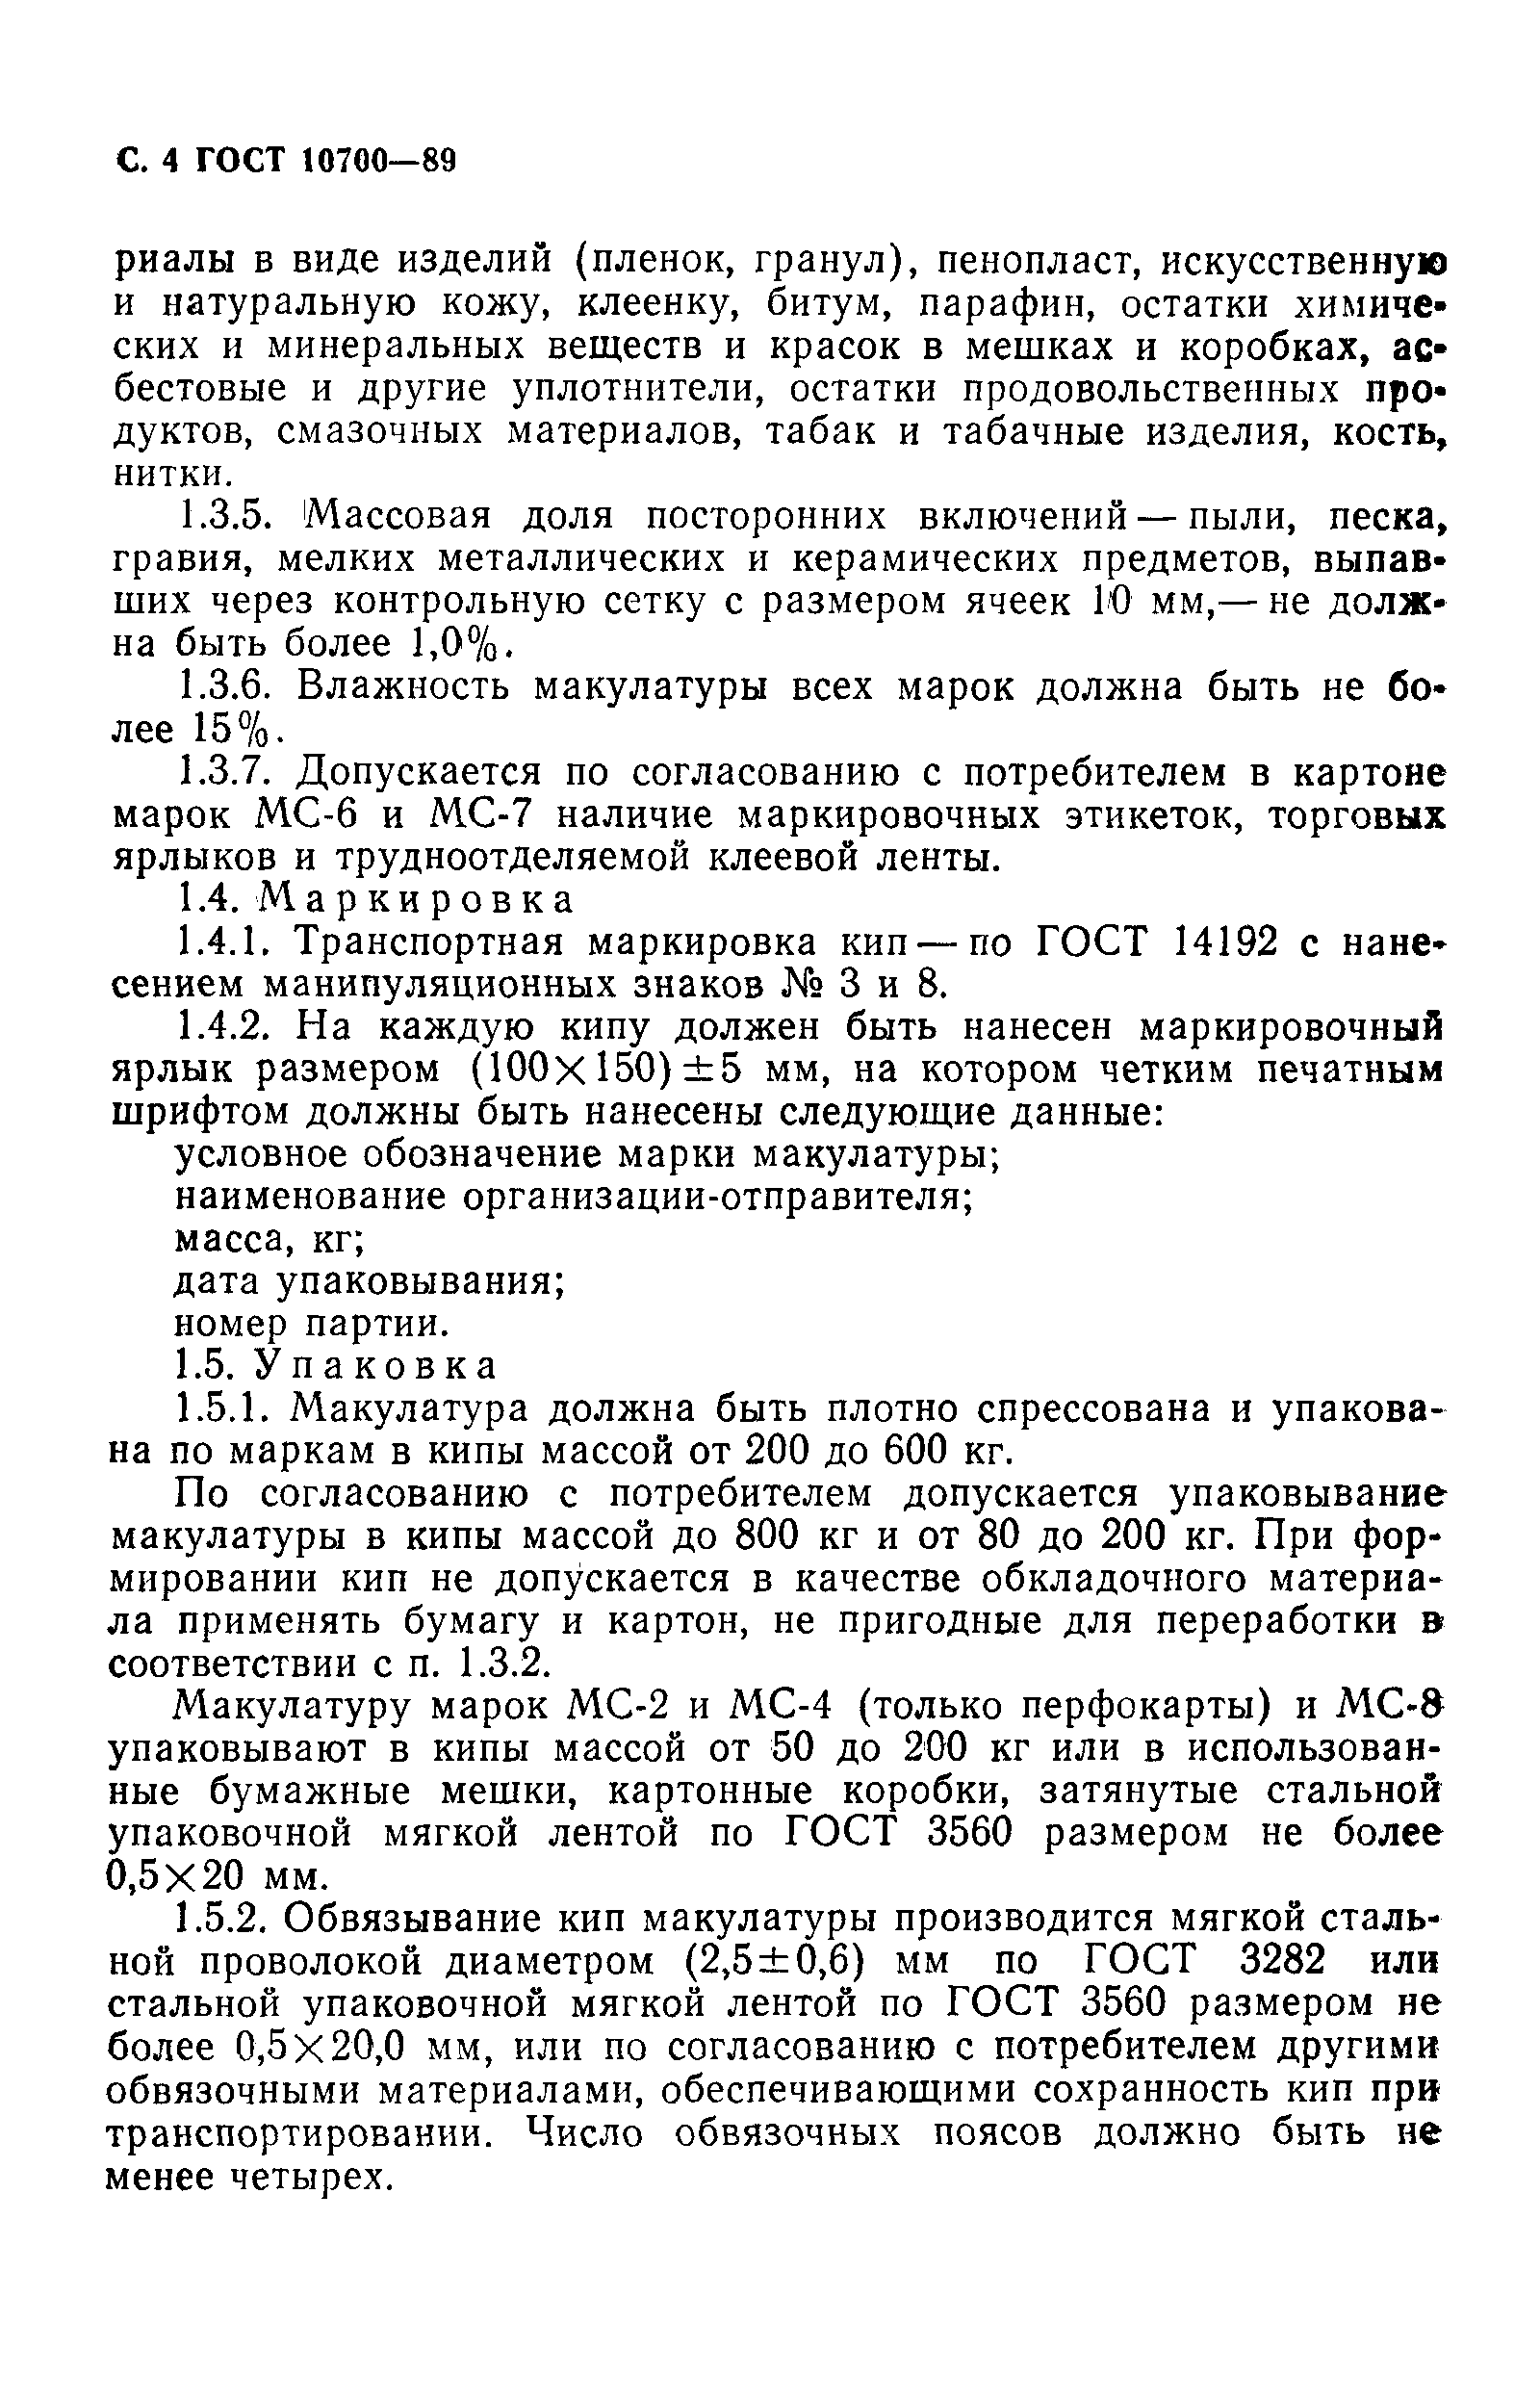 ГОСТ 10700-89, страница 5.